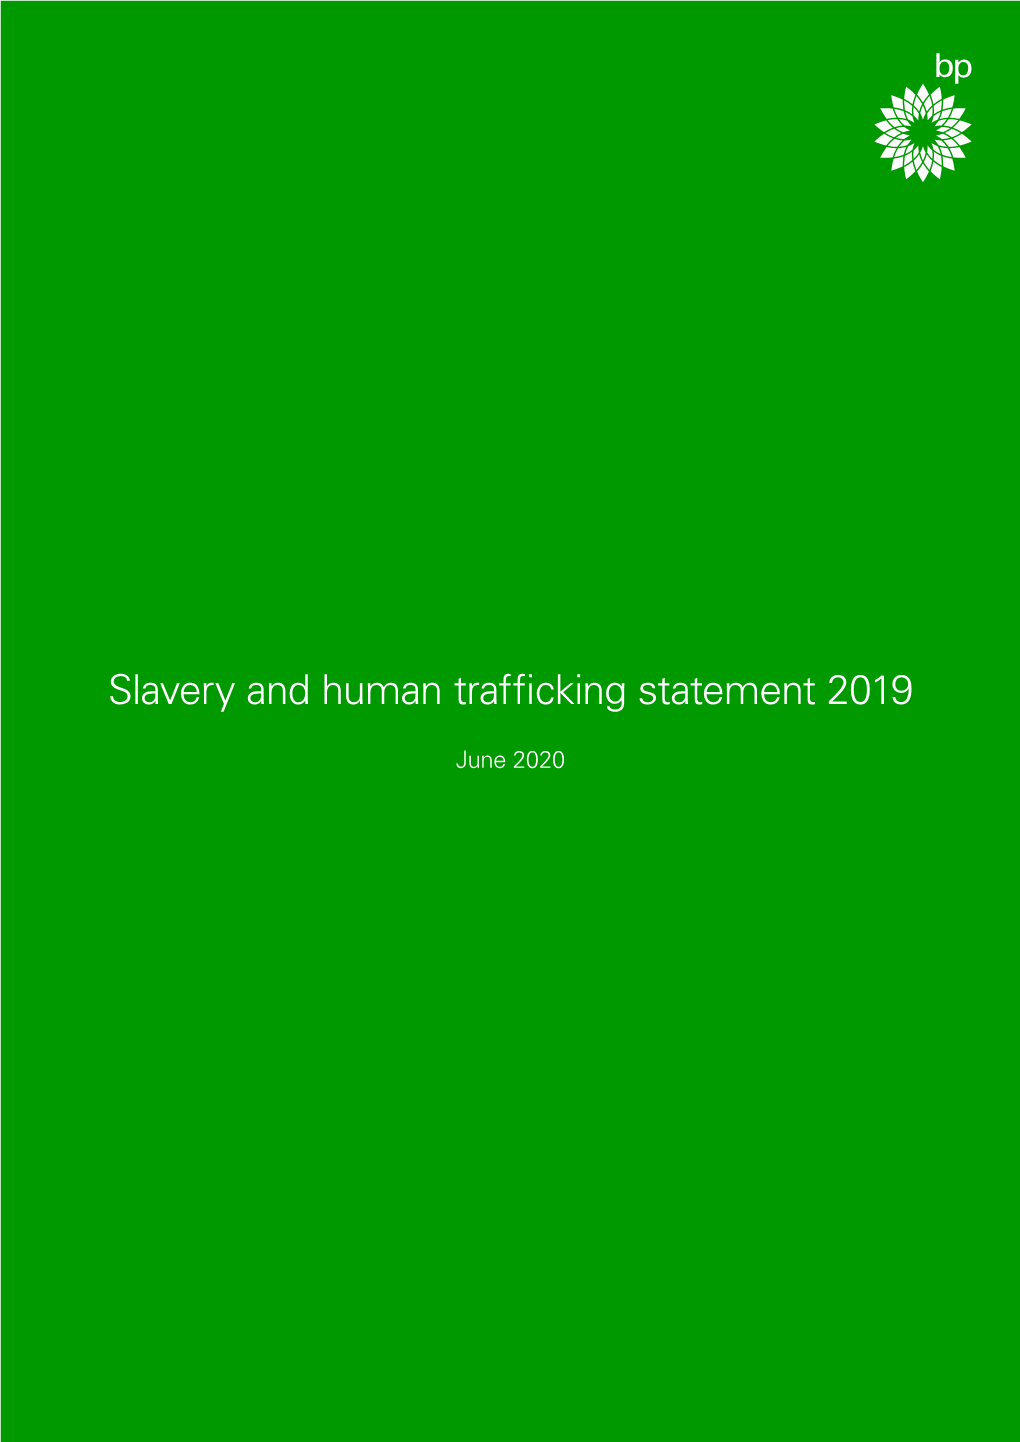 Modern Slavery and Human Trafficking Statement – 2019